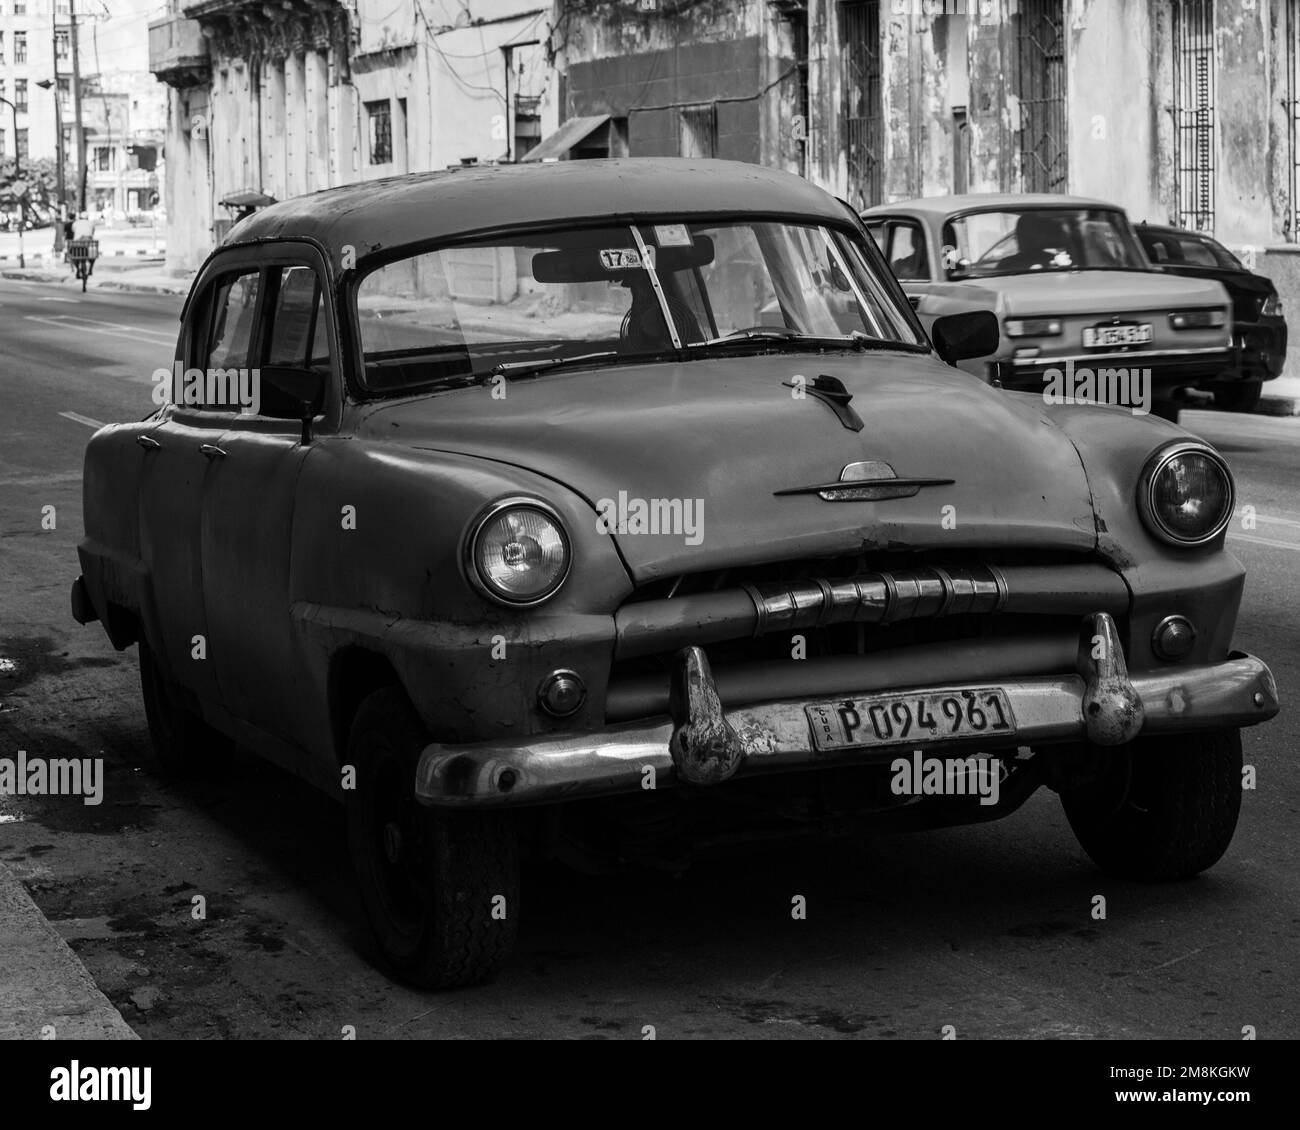 Almendrones la Havane Cuba Banque D'Images